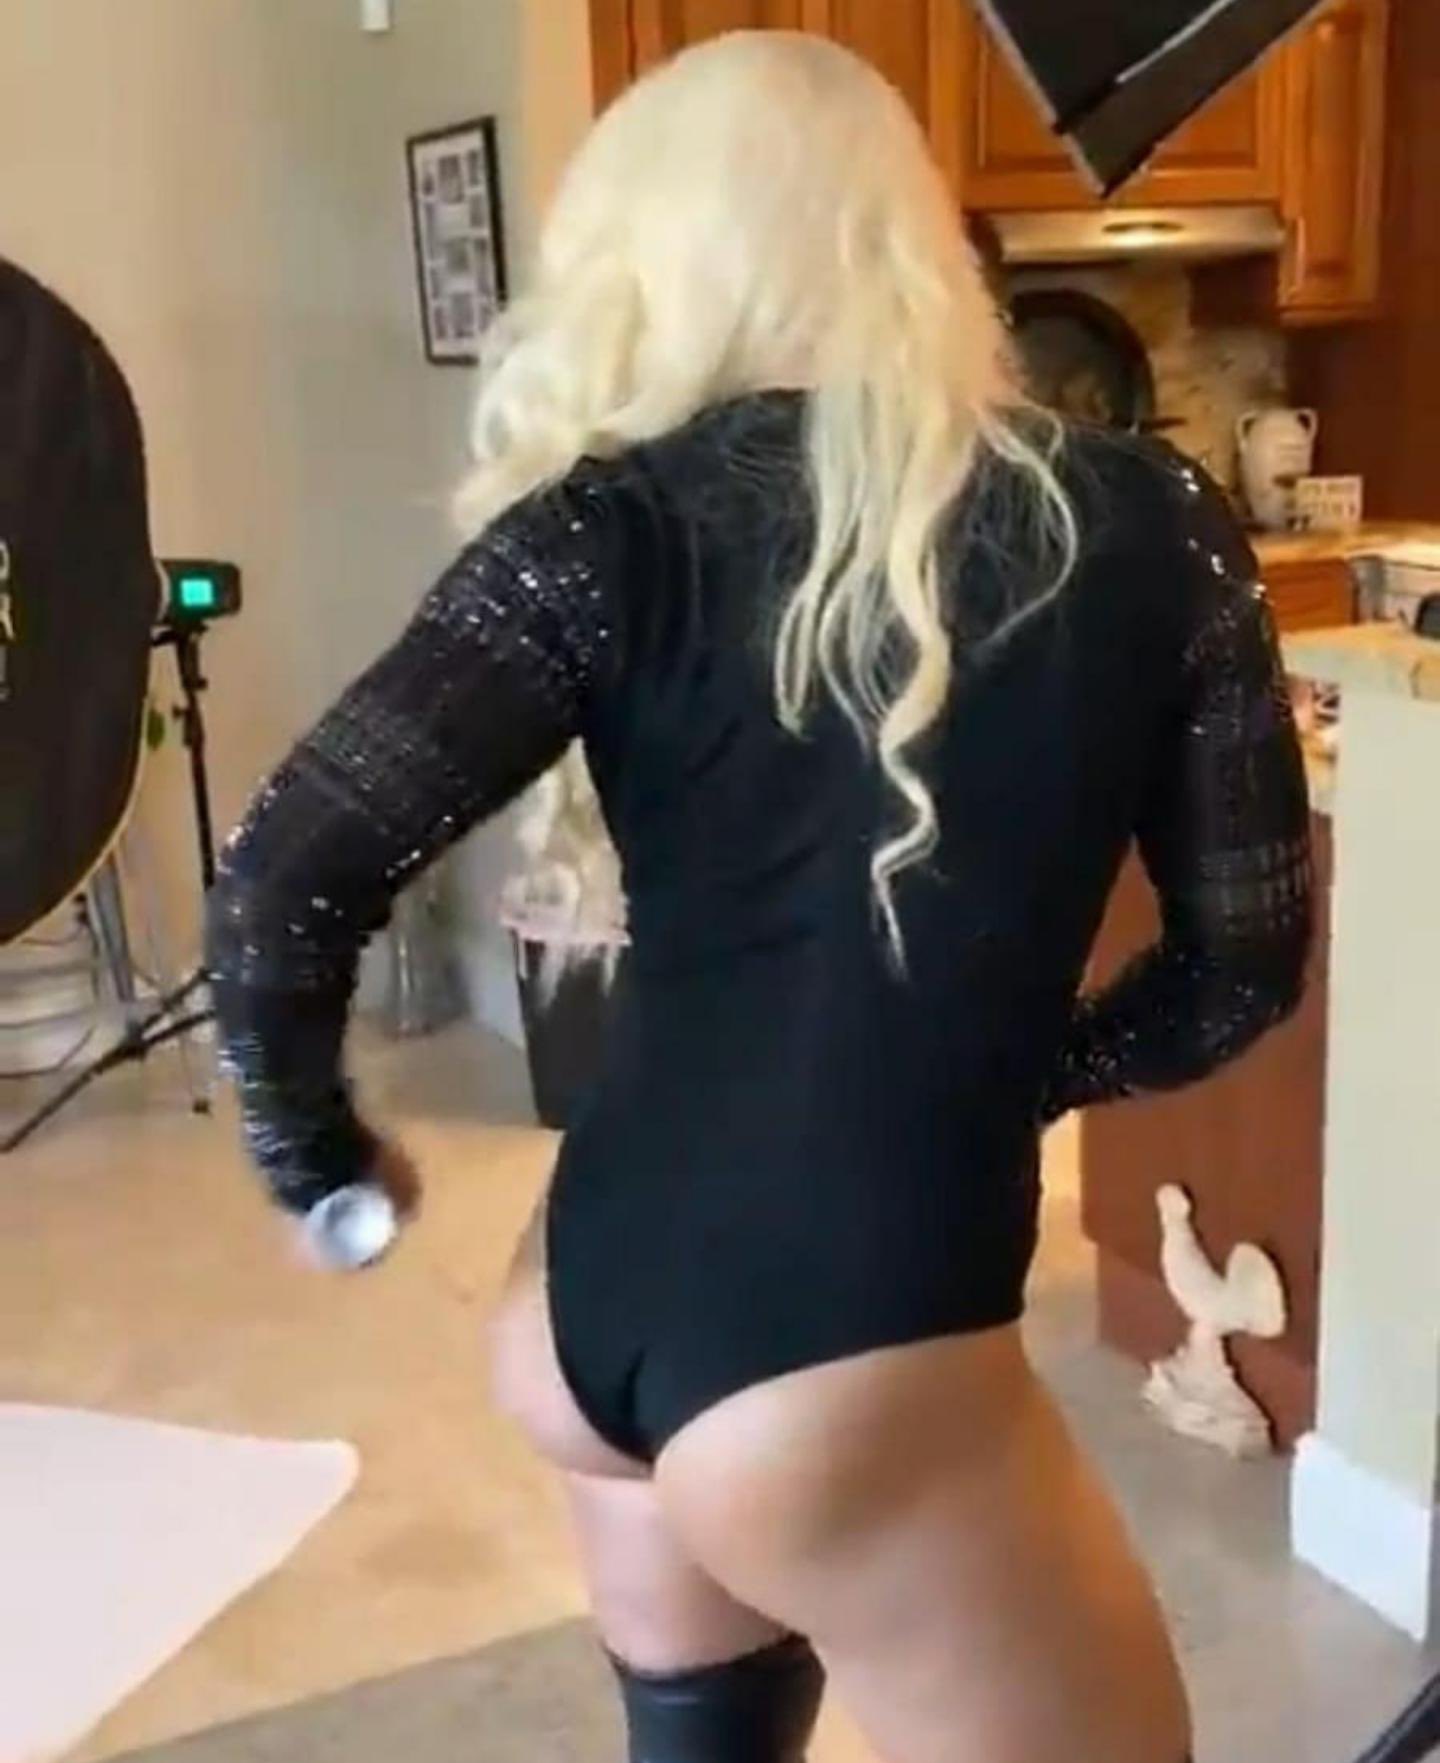 Mandy Rose Butt